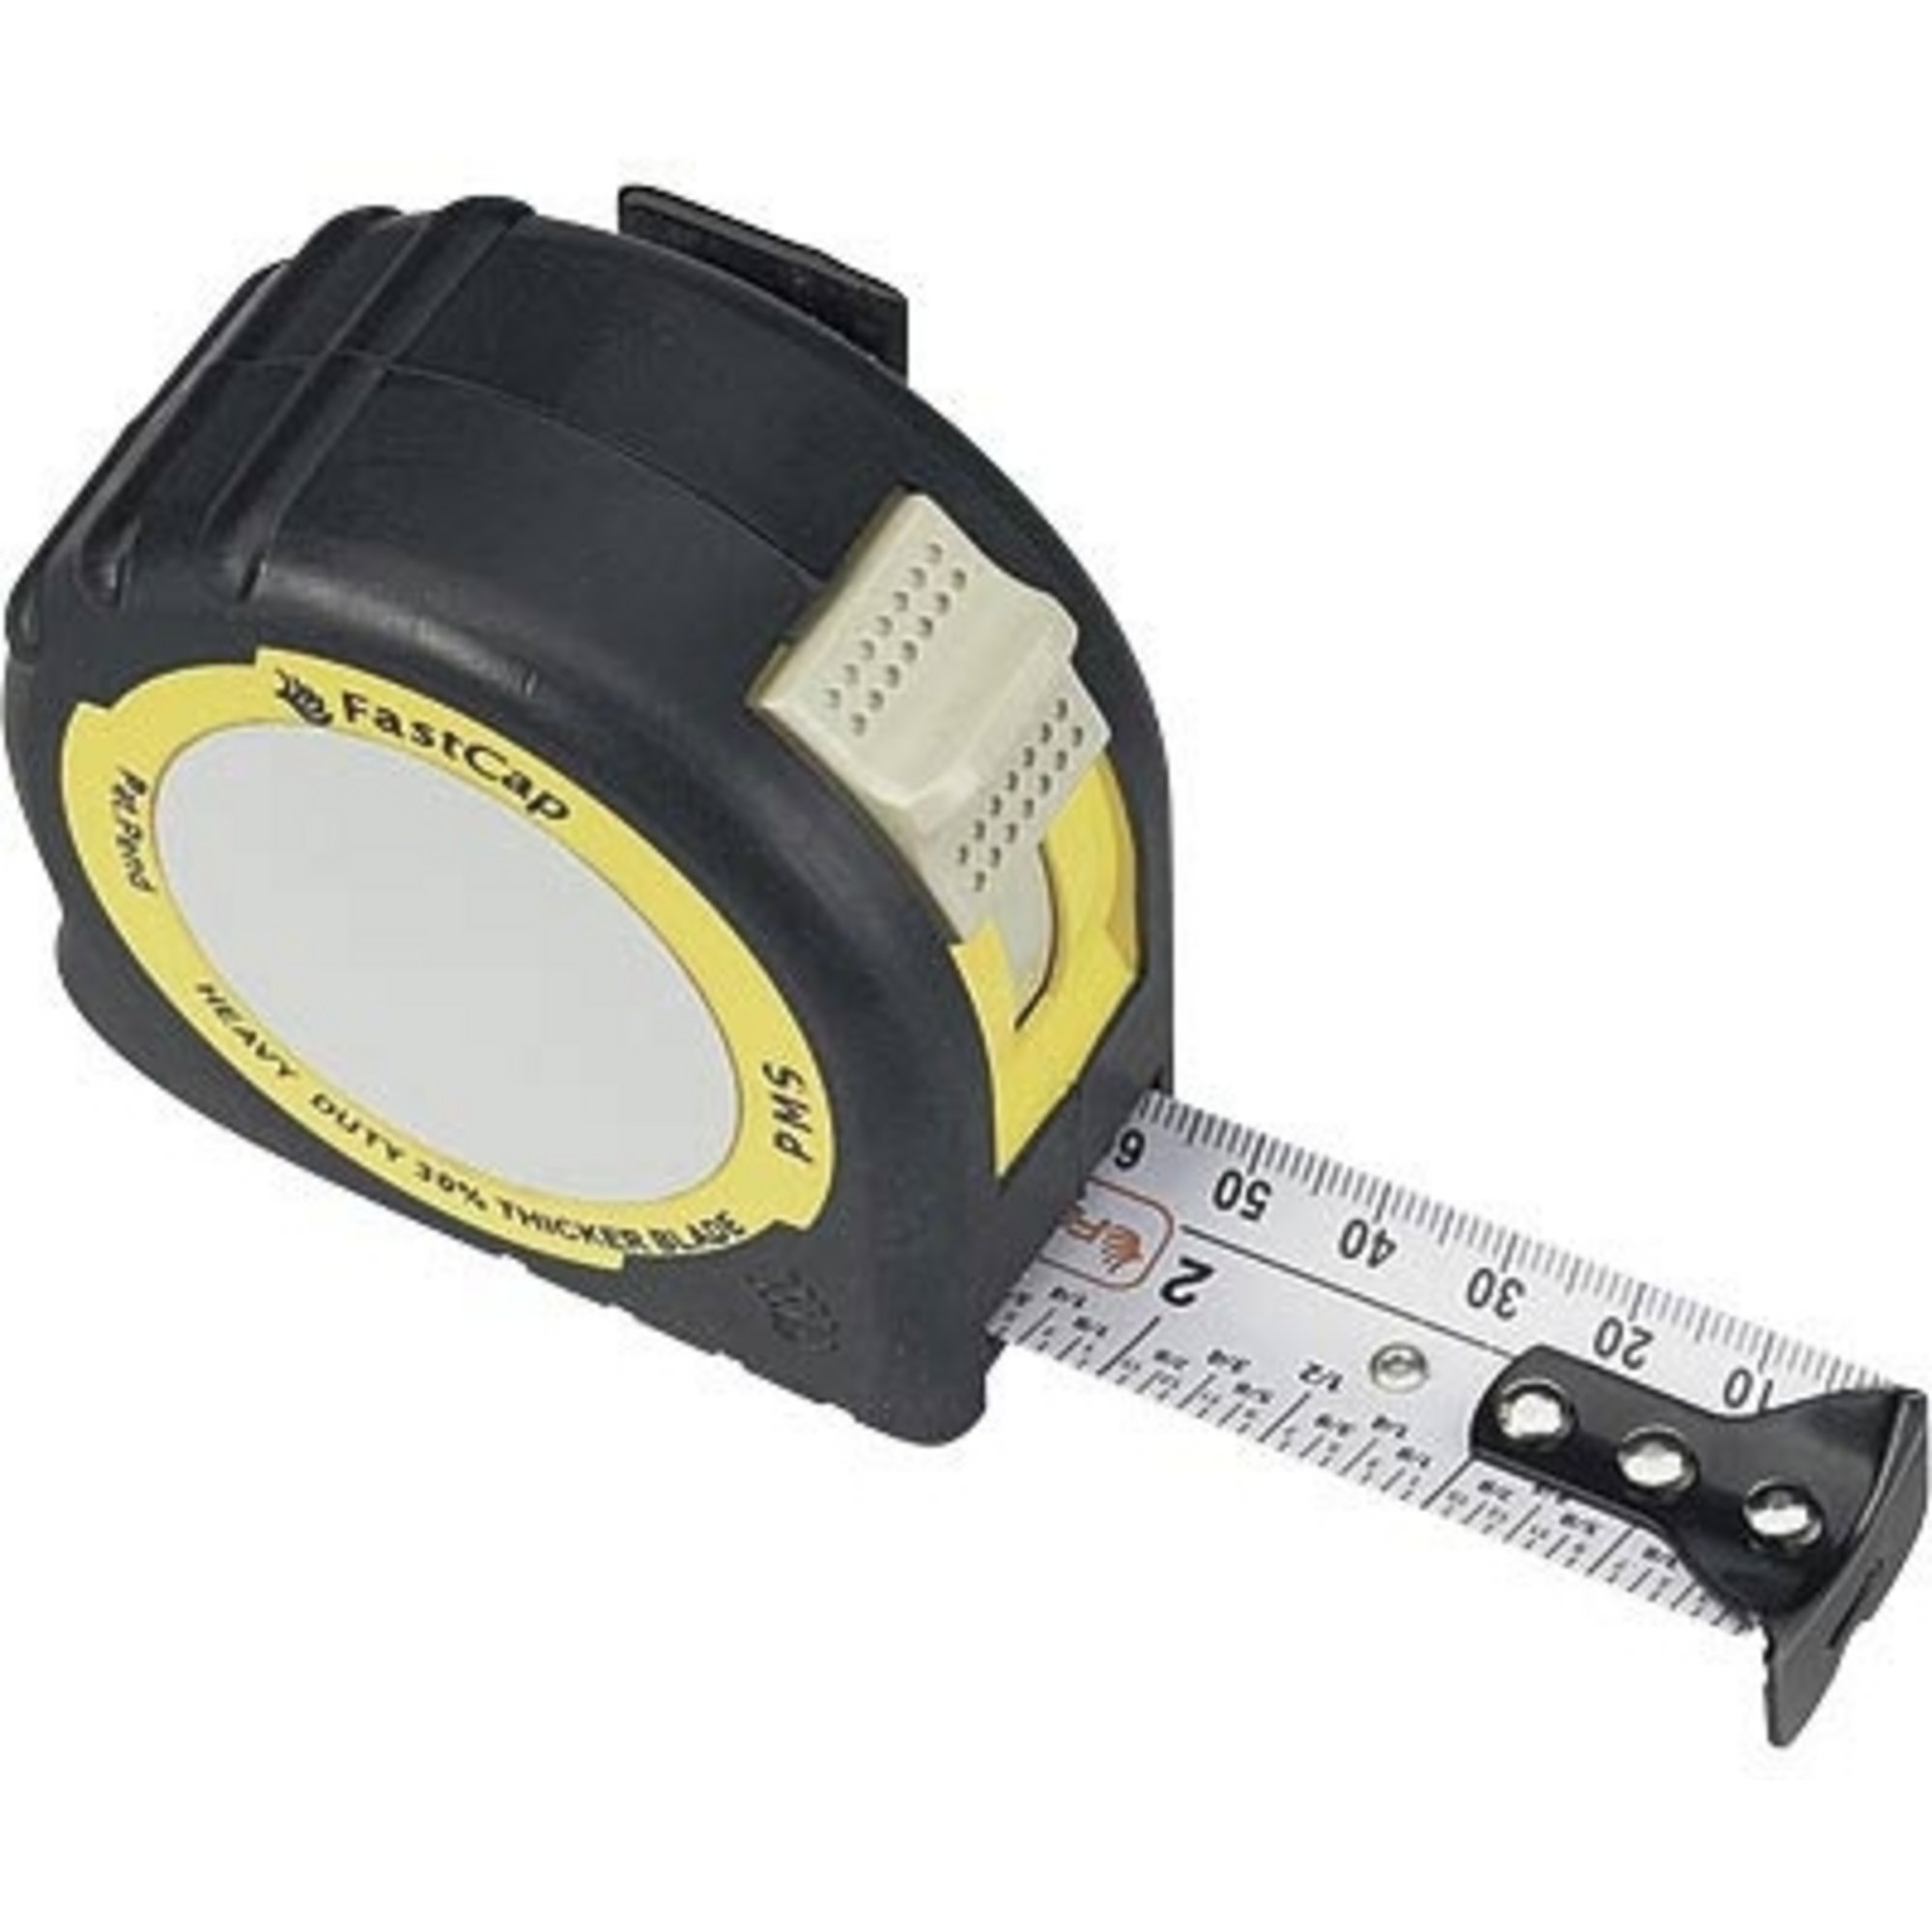 FastCap 16 ft. Metric/Standard Measure Tape